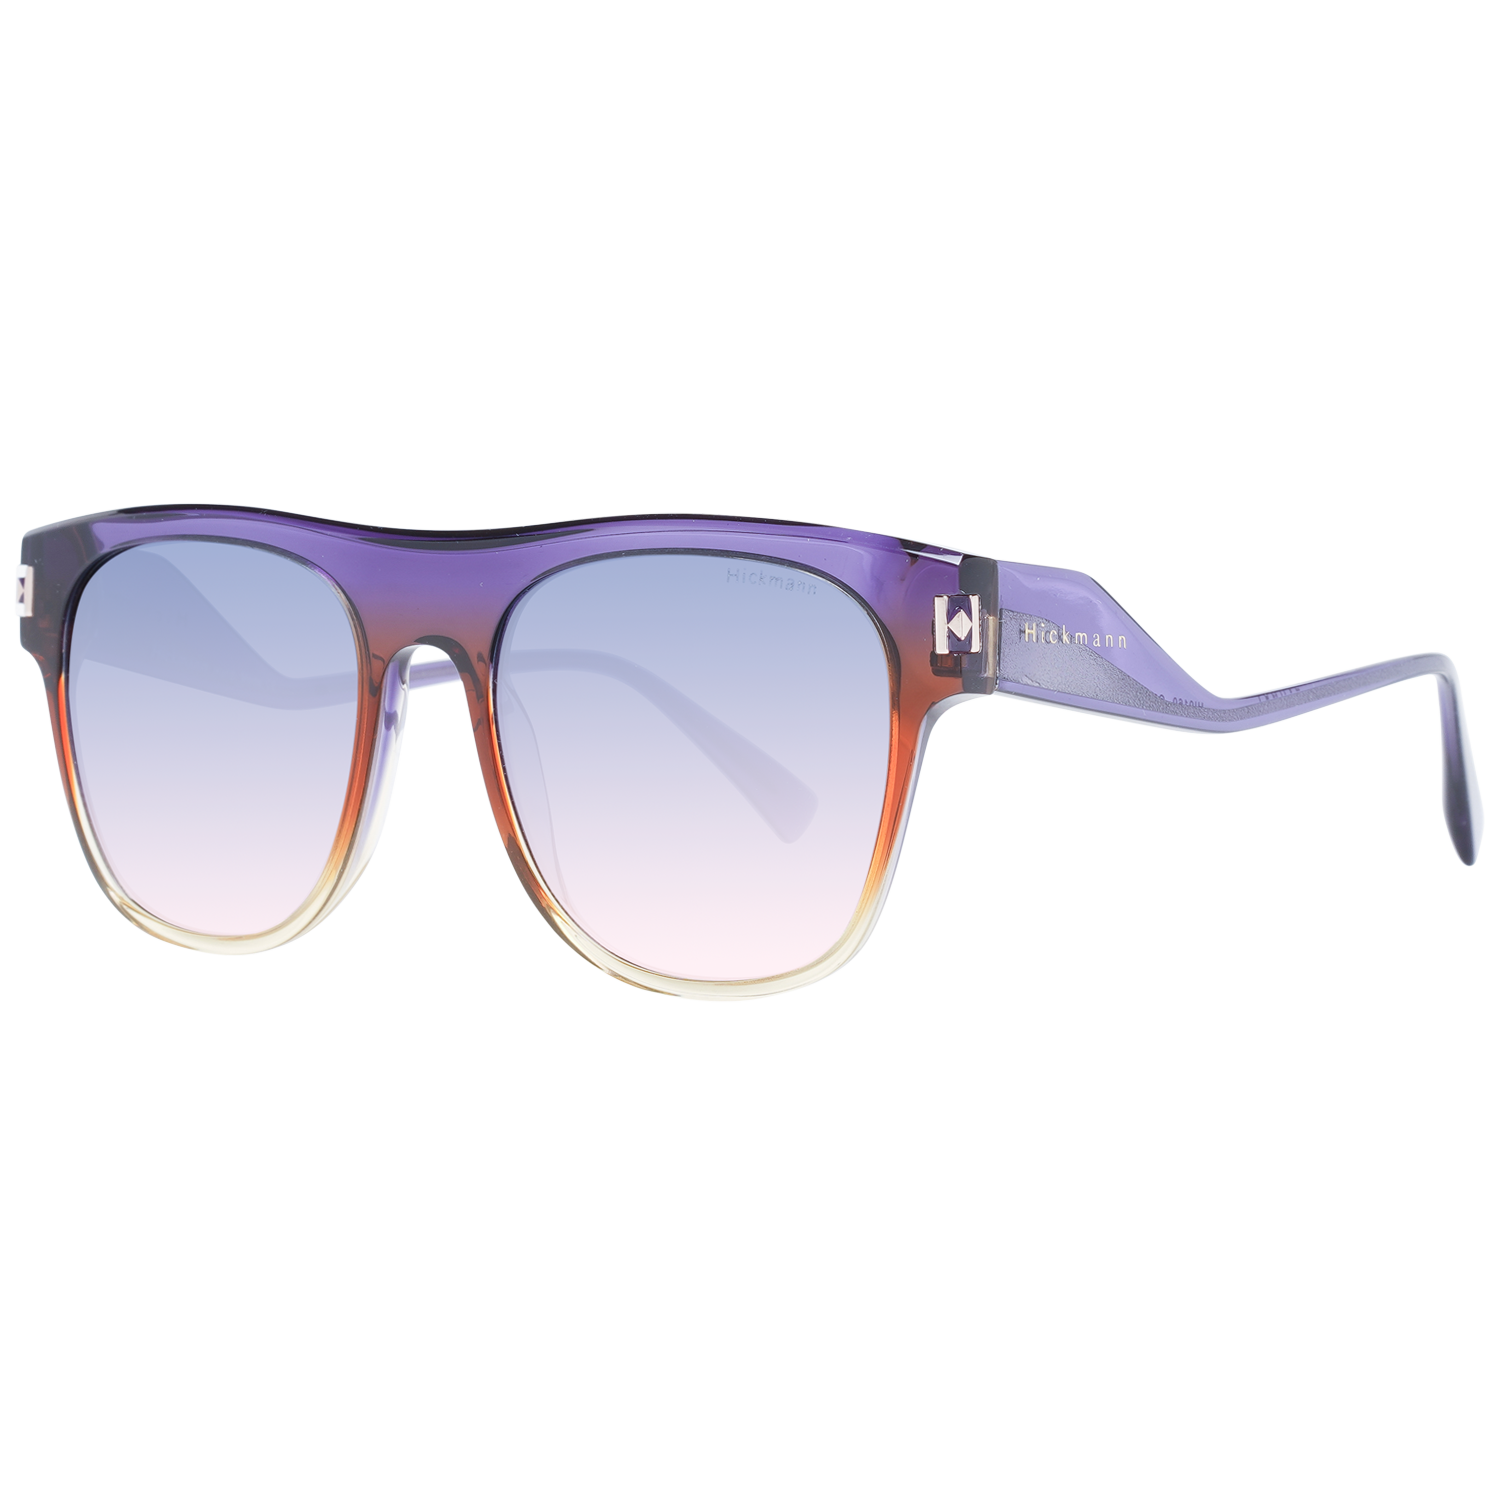 Dámské sluneční brýle Ana Hickmann HI9160 C01 52